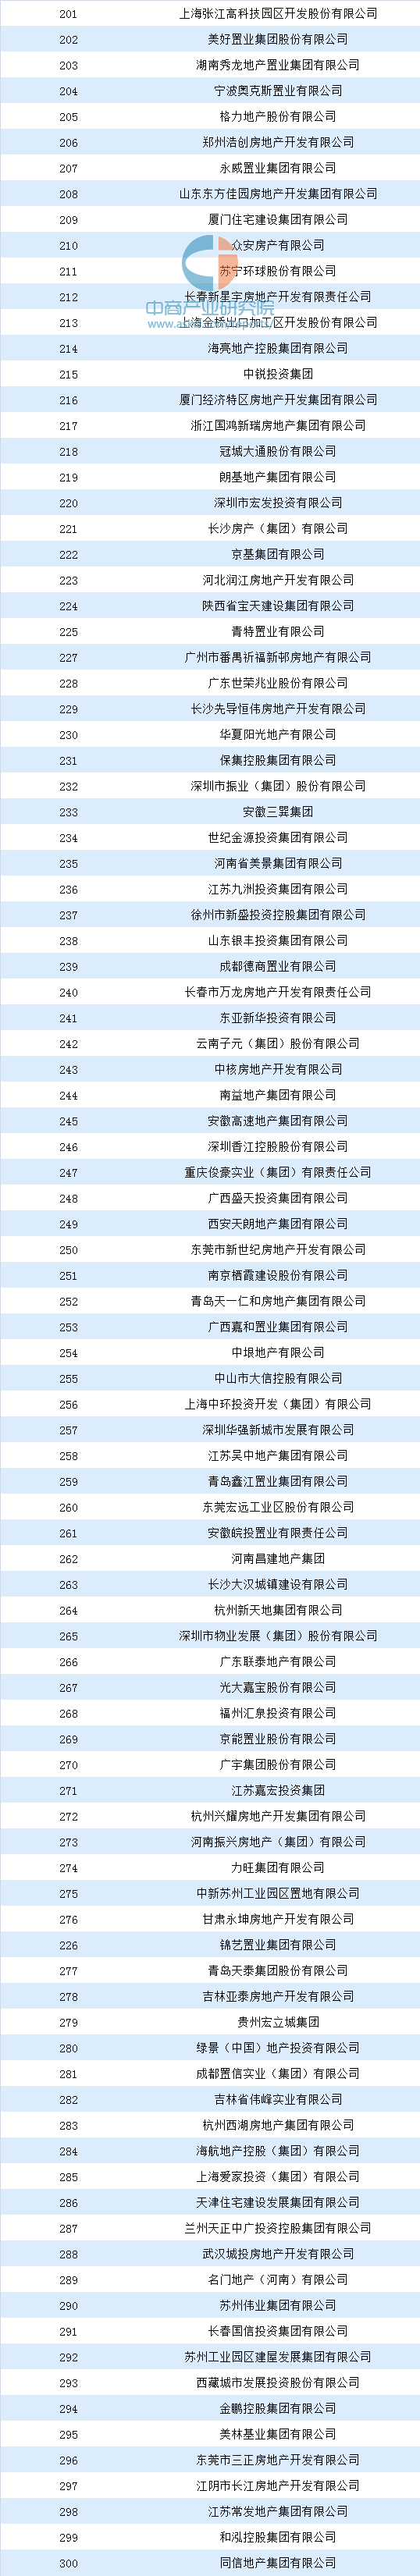 2020年中国500强房地排名2020年中国房地产500强排行榜